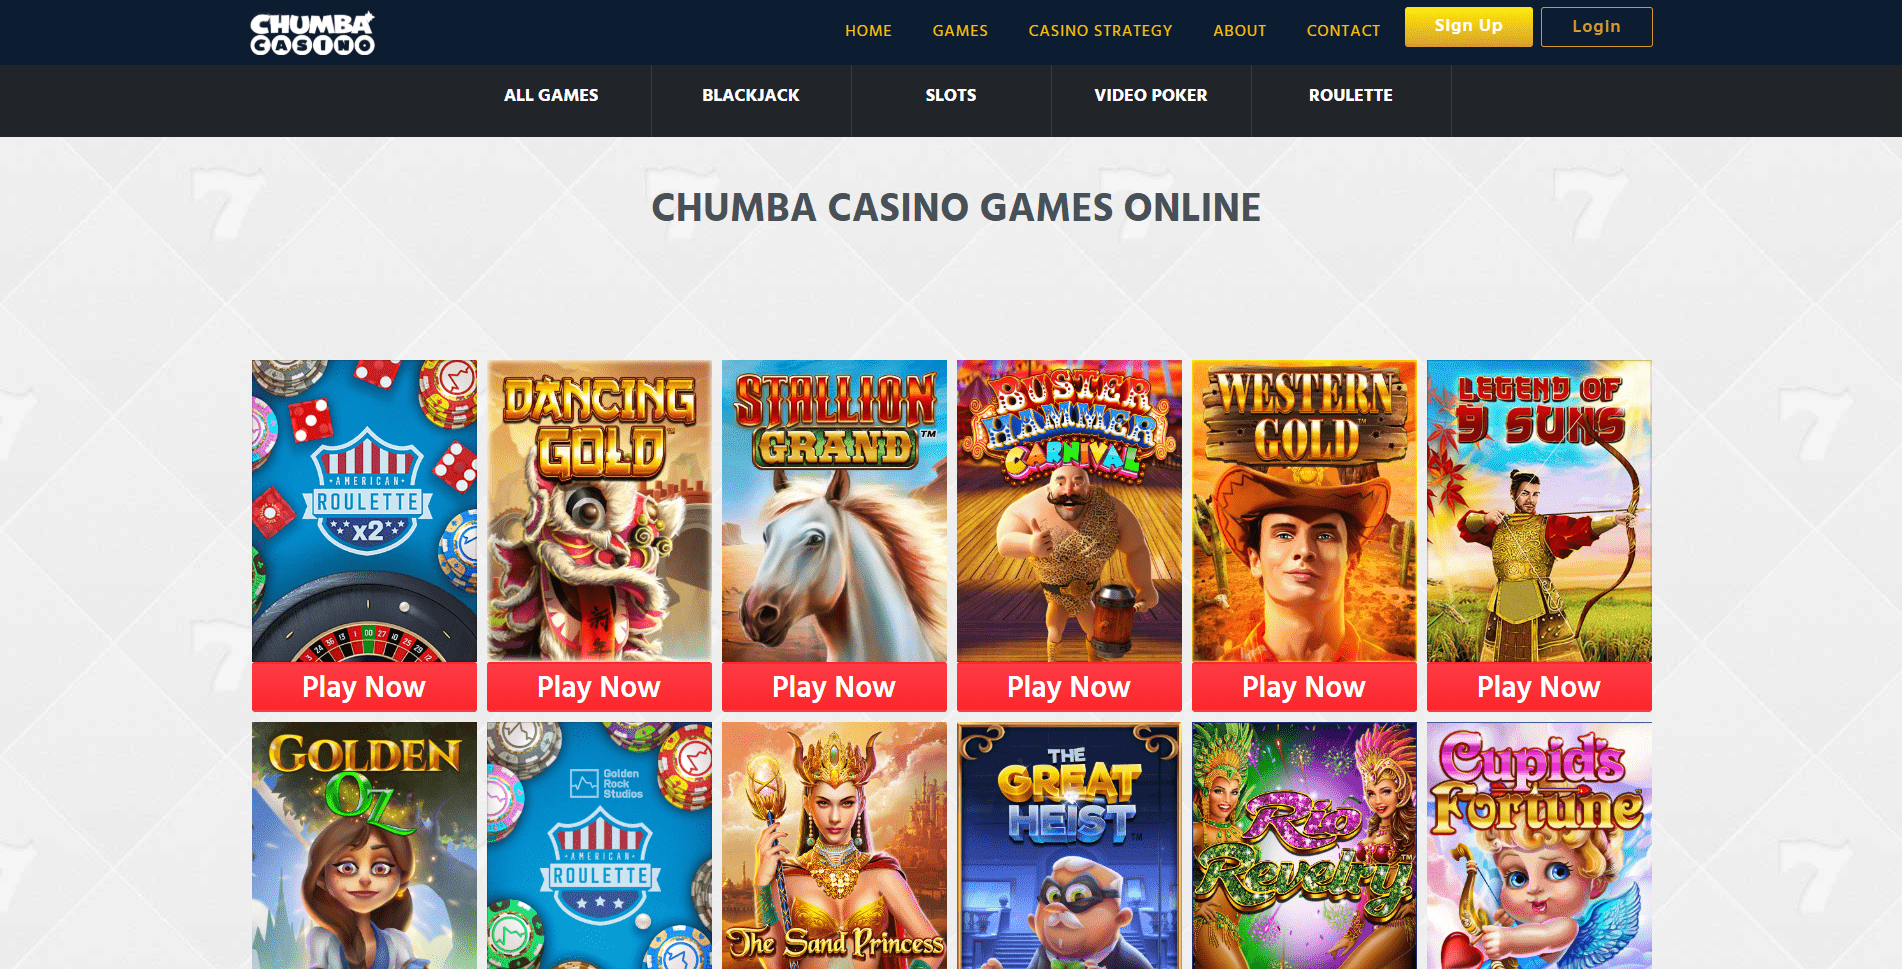 Chumba casino sign in